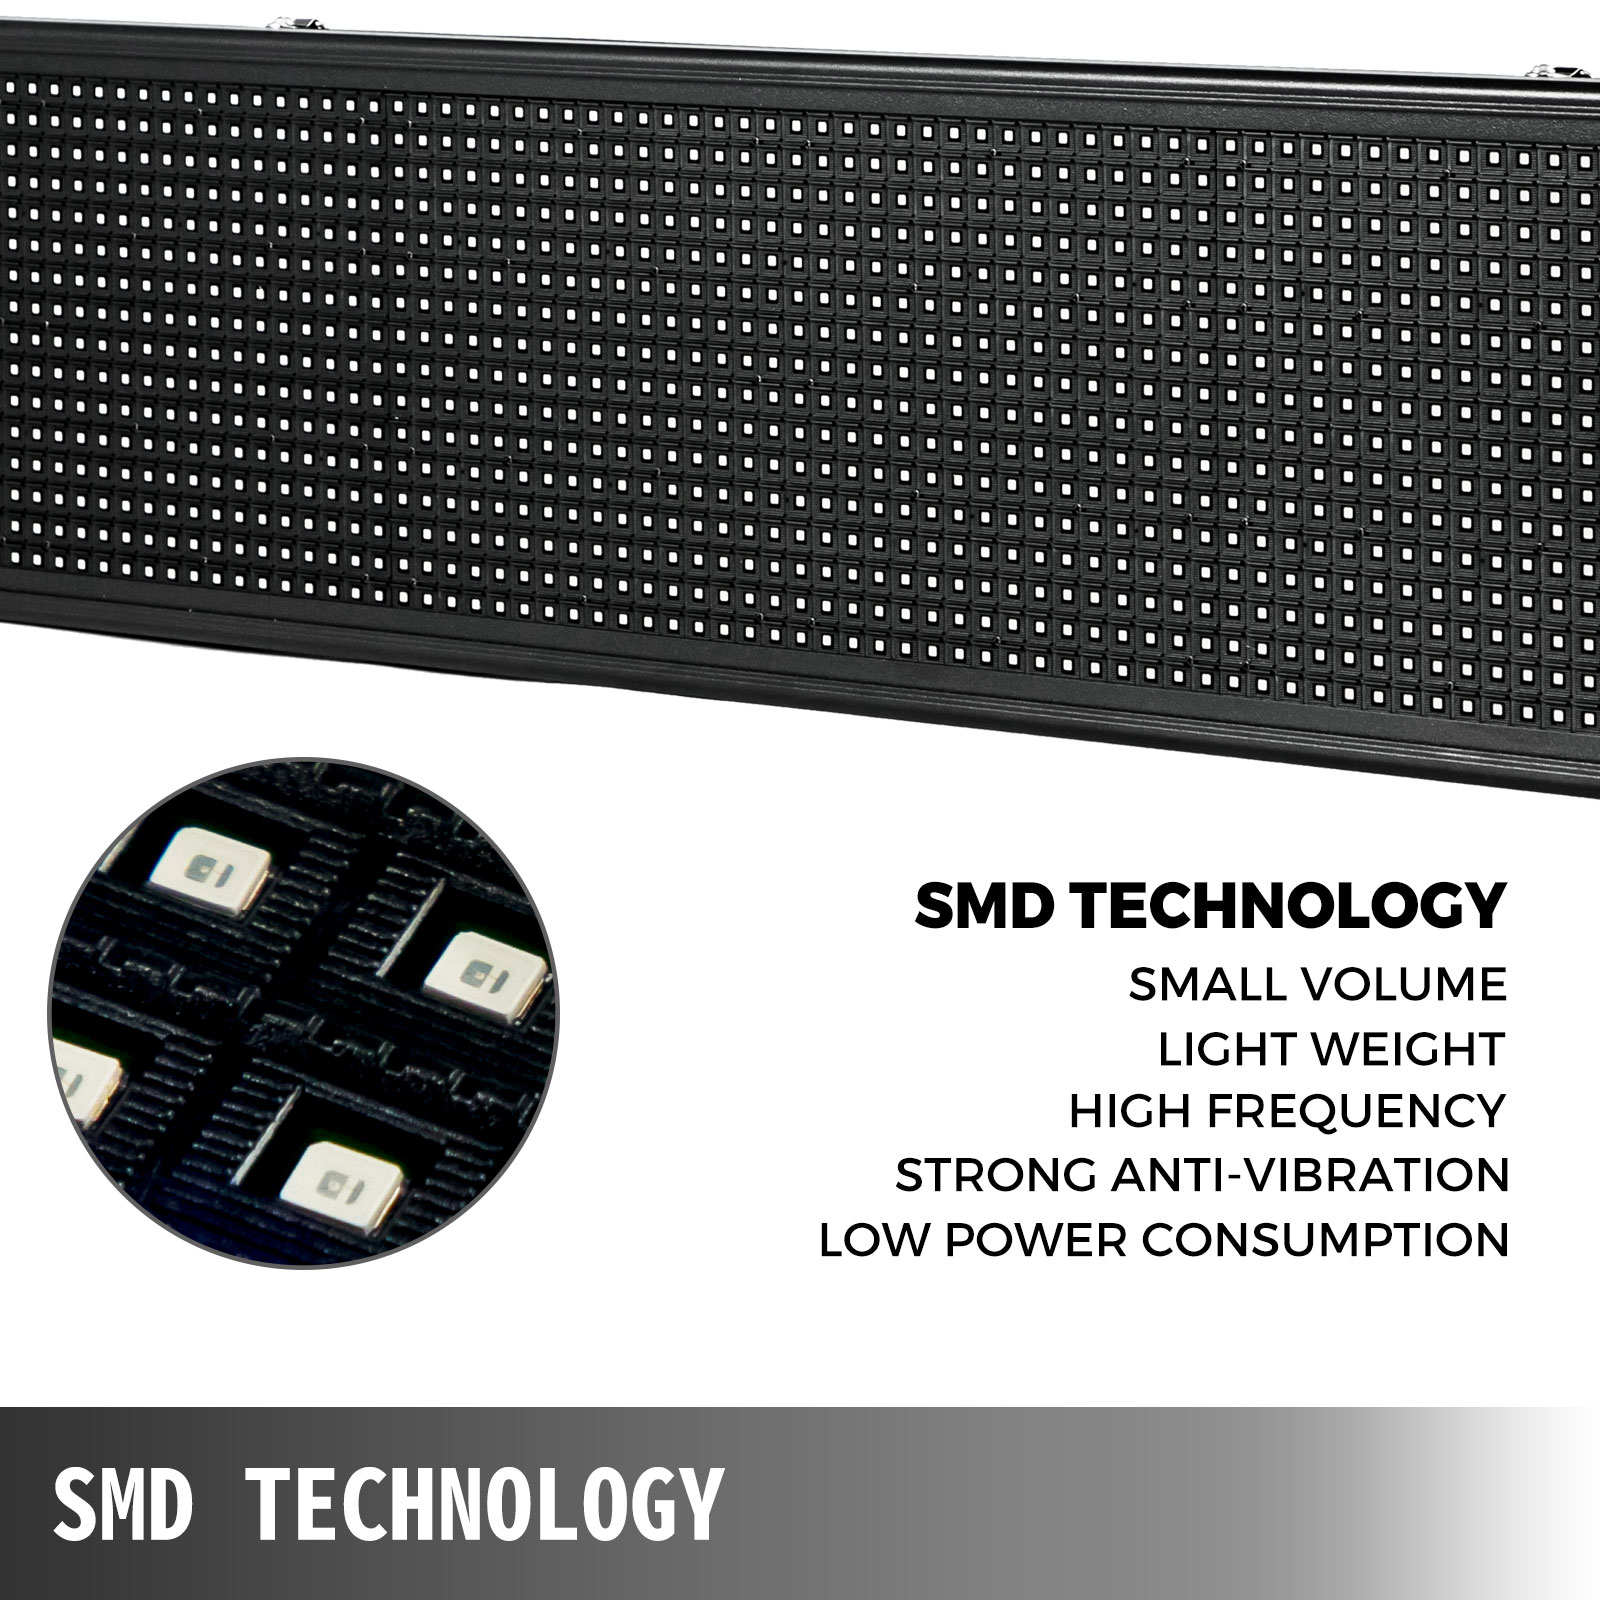 VEVOR LED-Laufschrift 40x8 Inch RGB 96 96 Pixel Programmierbar SMD-LED WiFi  Scroll-Display Nachrichtenboard für Werbung, Auto PC, USB-Stick, Smartphone  Steuerbar 101 x 20 x 5 cm